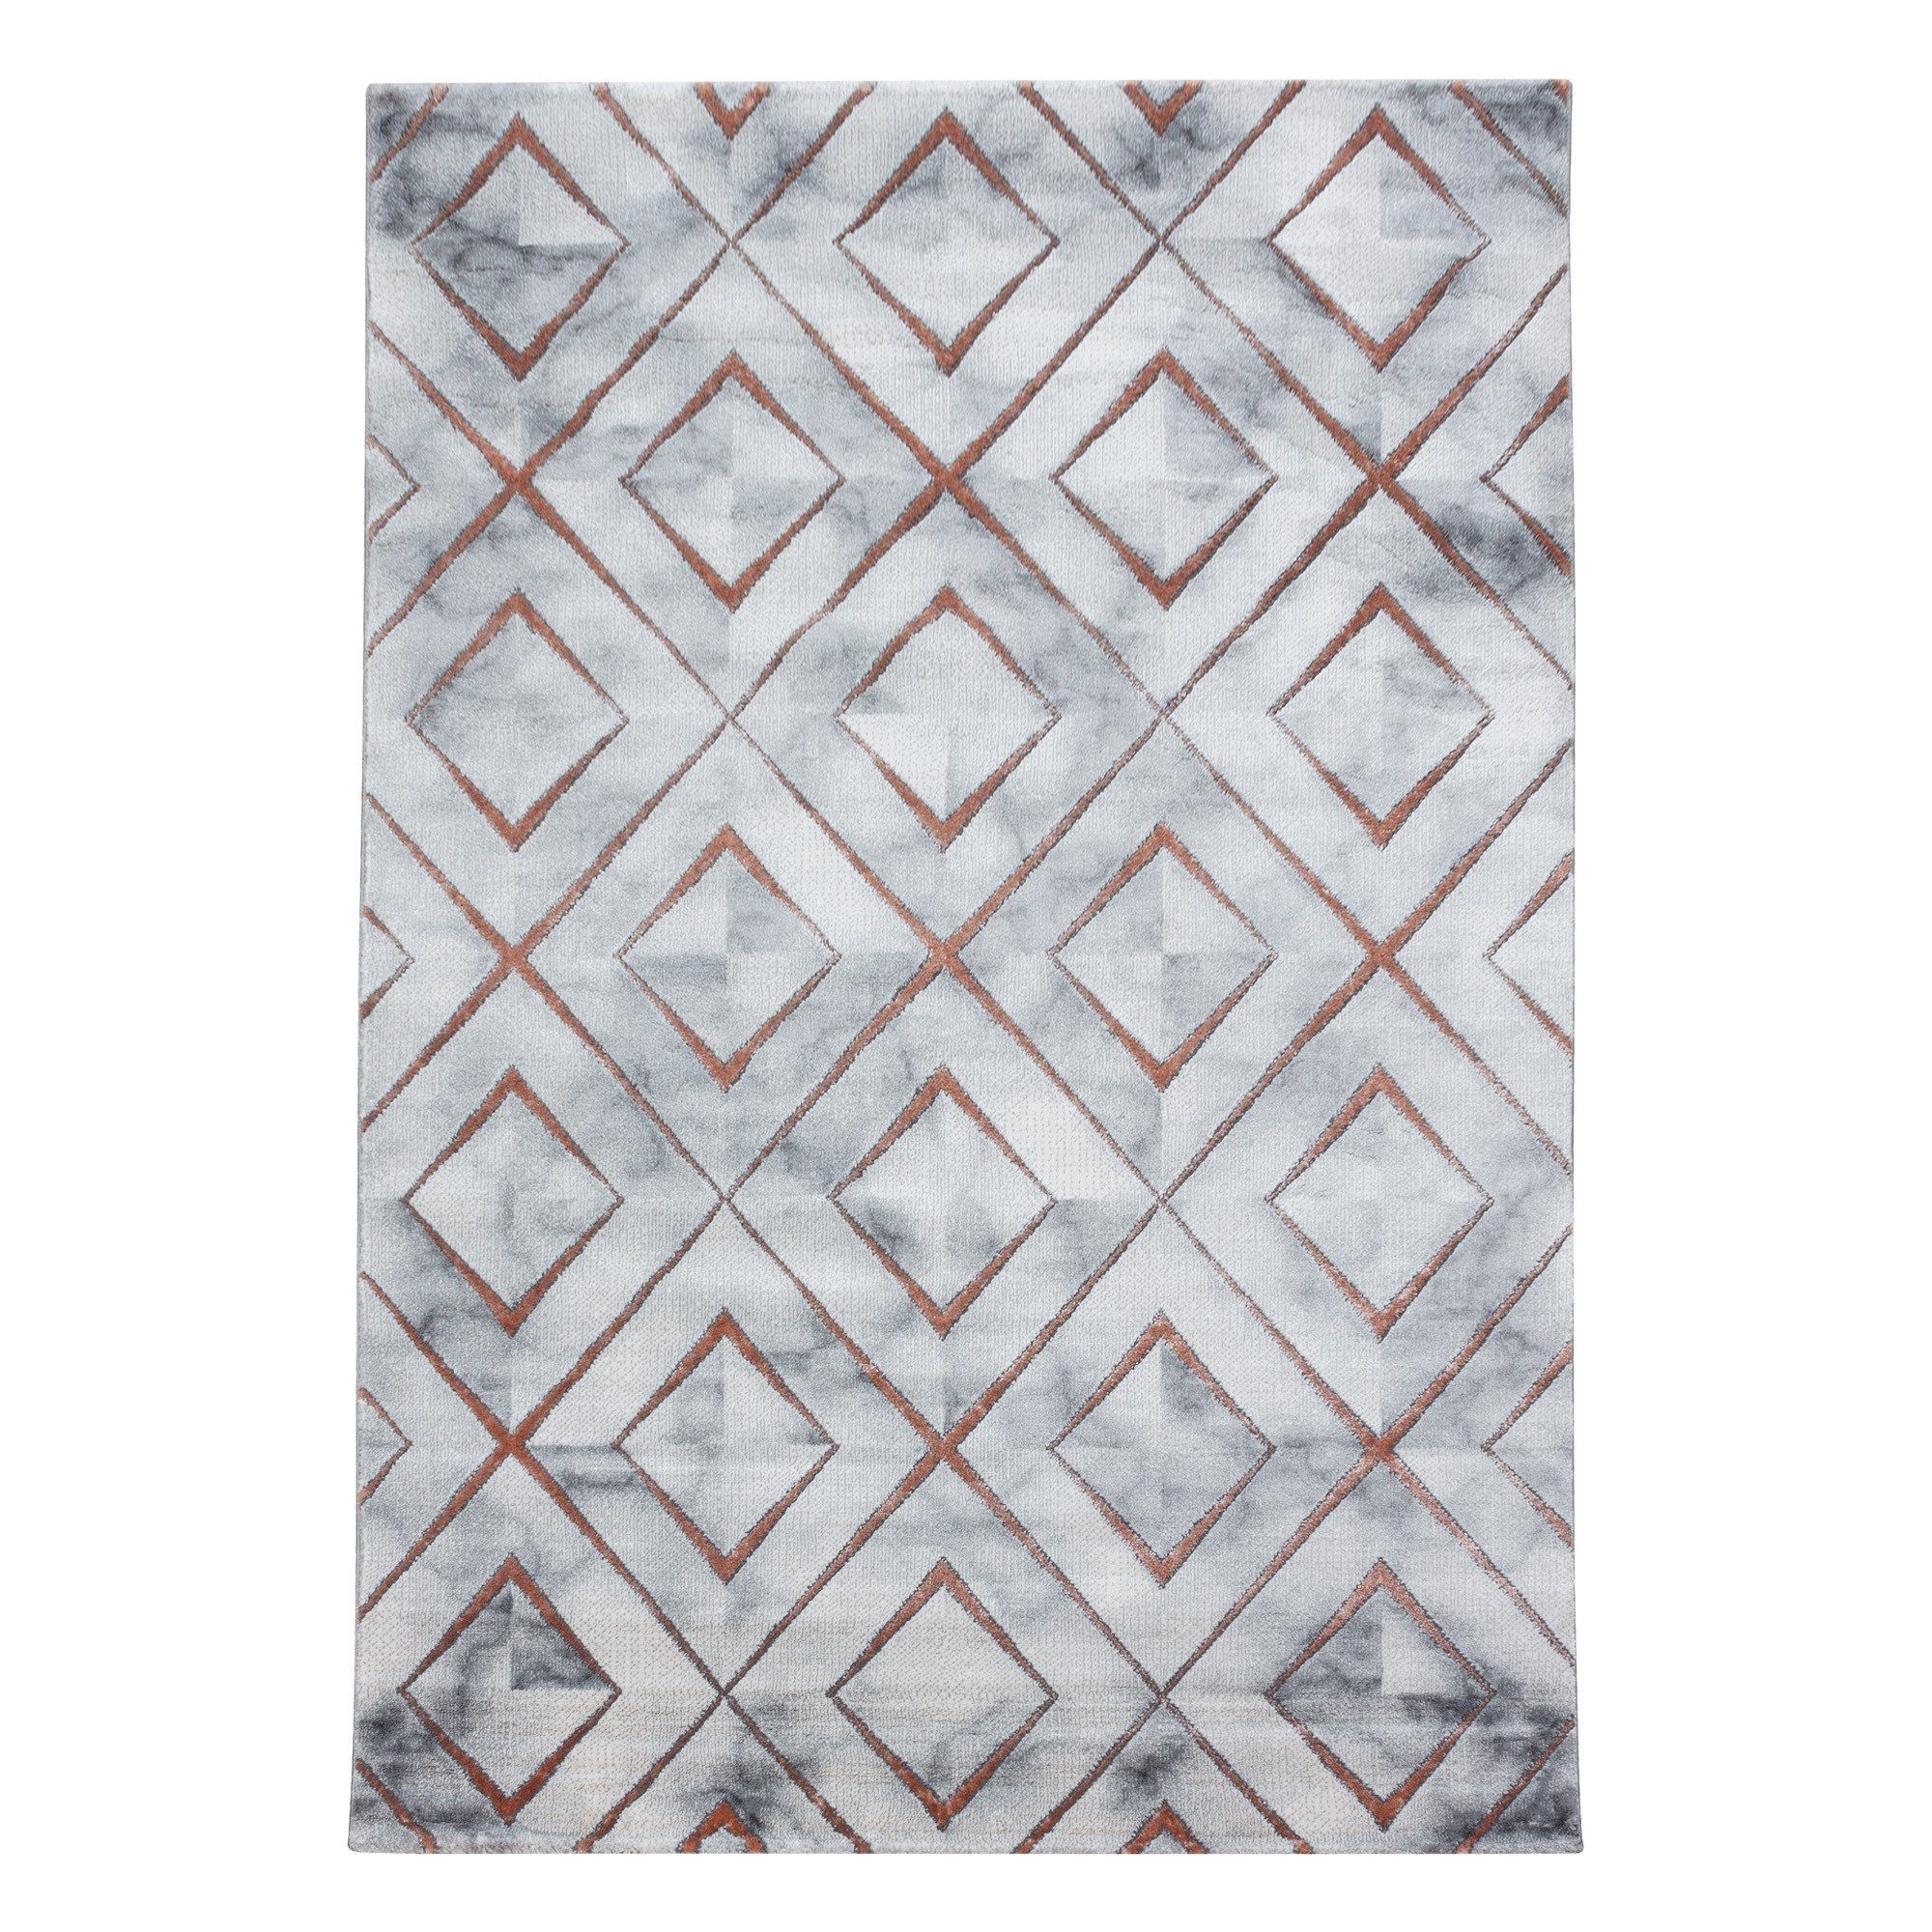 Designteppich Marmoroptik Flachflorteppich Kurzflorteppich Wohnzimmer Bronze Muster, Miovani